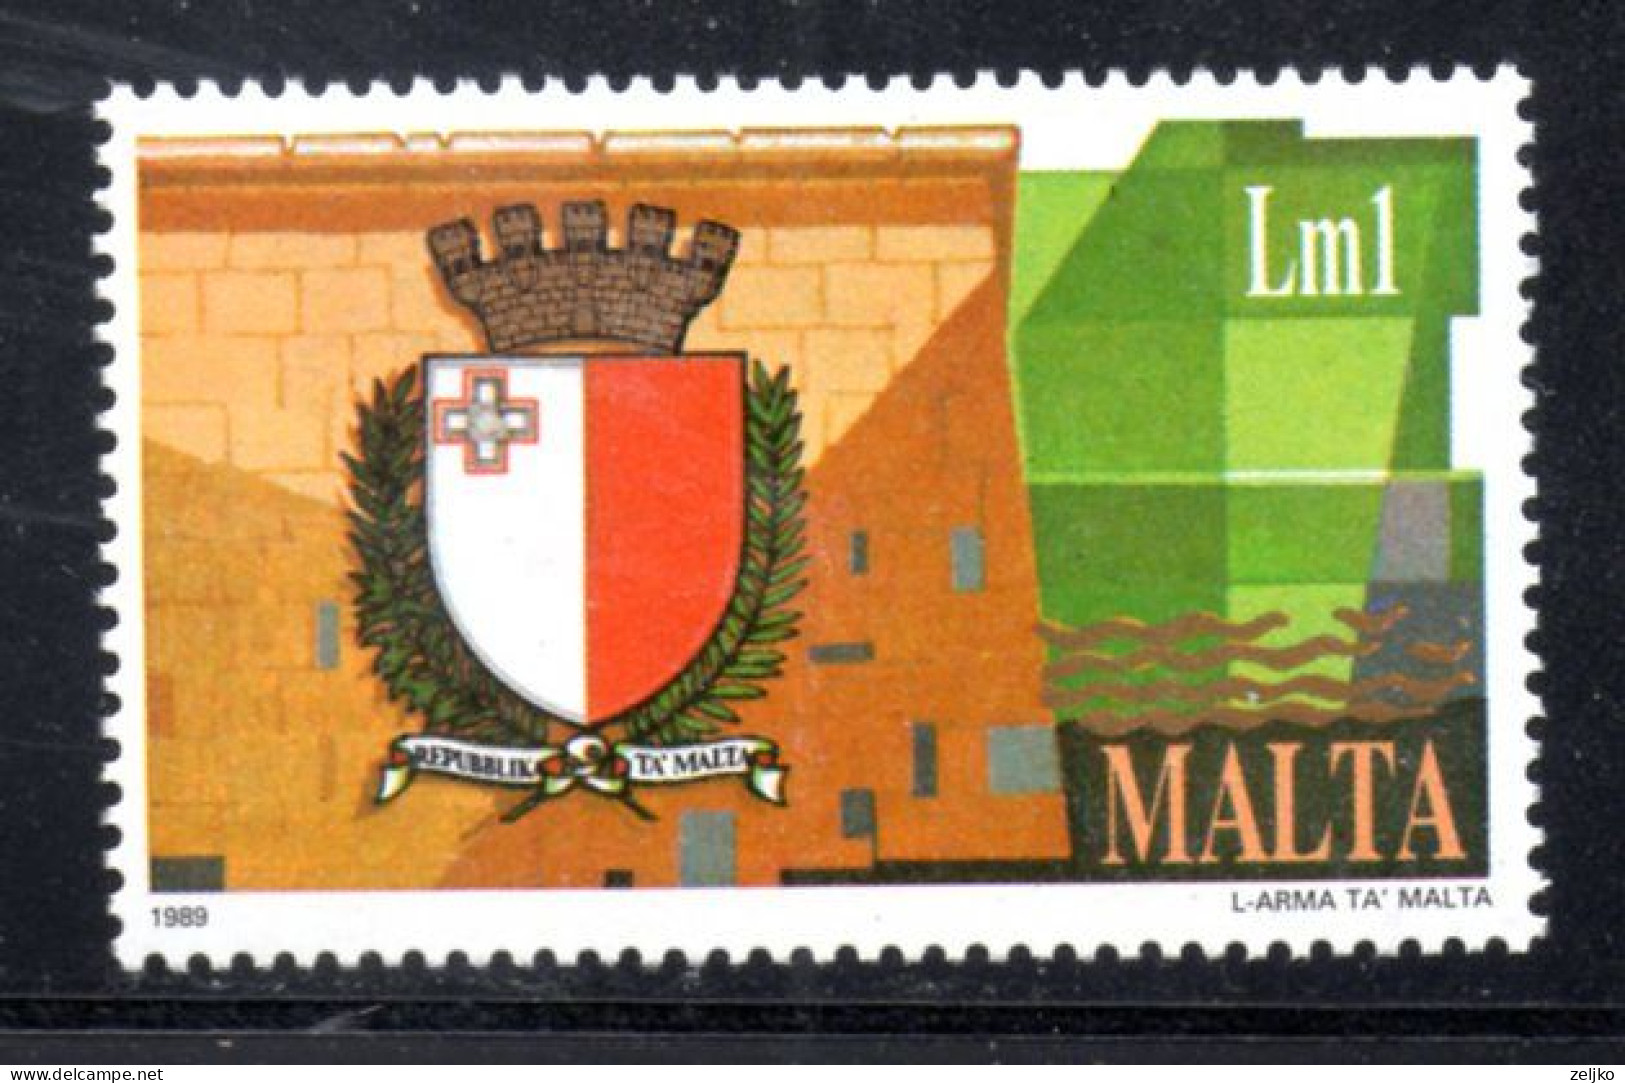 *** Malta, 1989, Michel 815, MNH, New Coat Of Arms - Malte